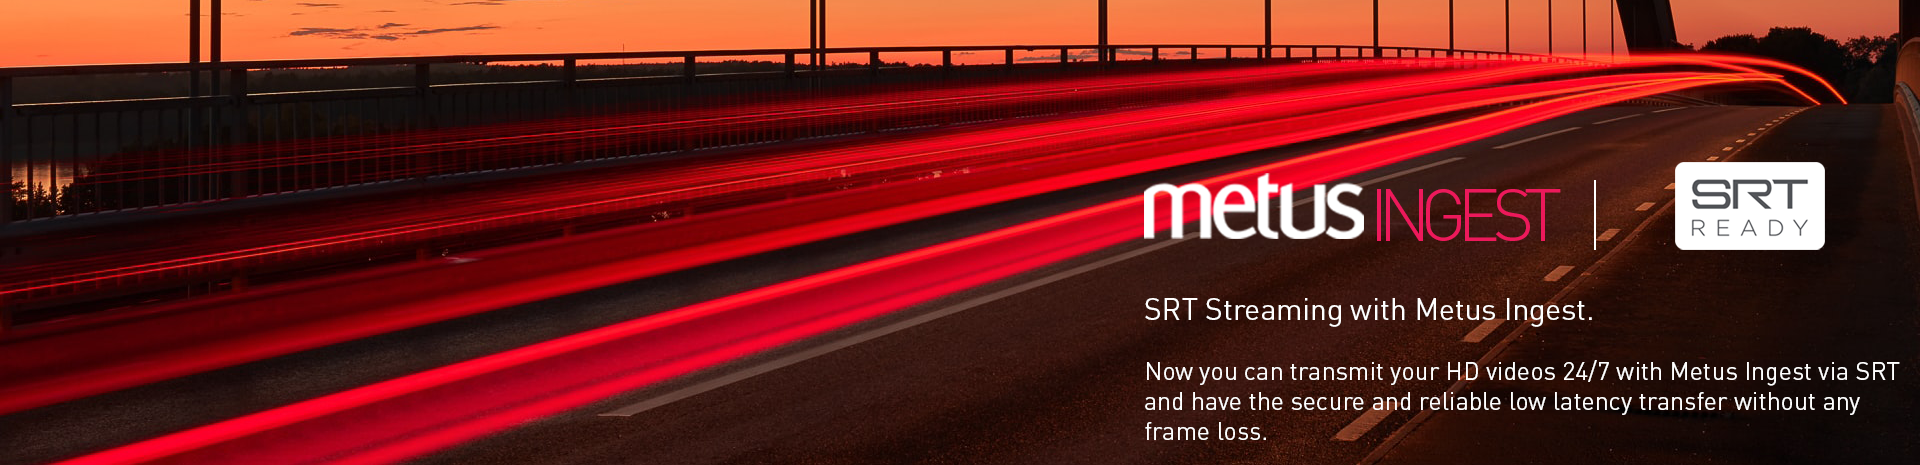 Metus Adds SRT Streaming to Metus INGEST!